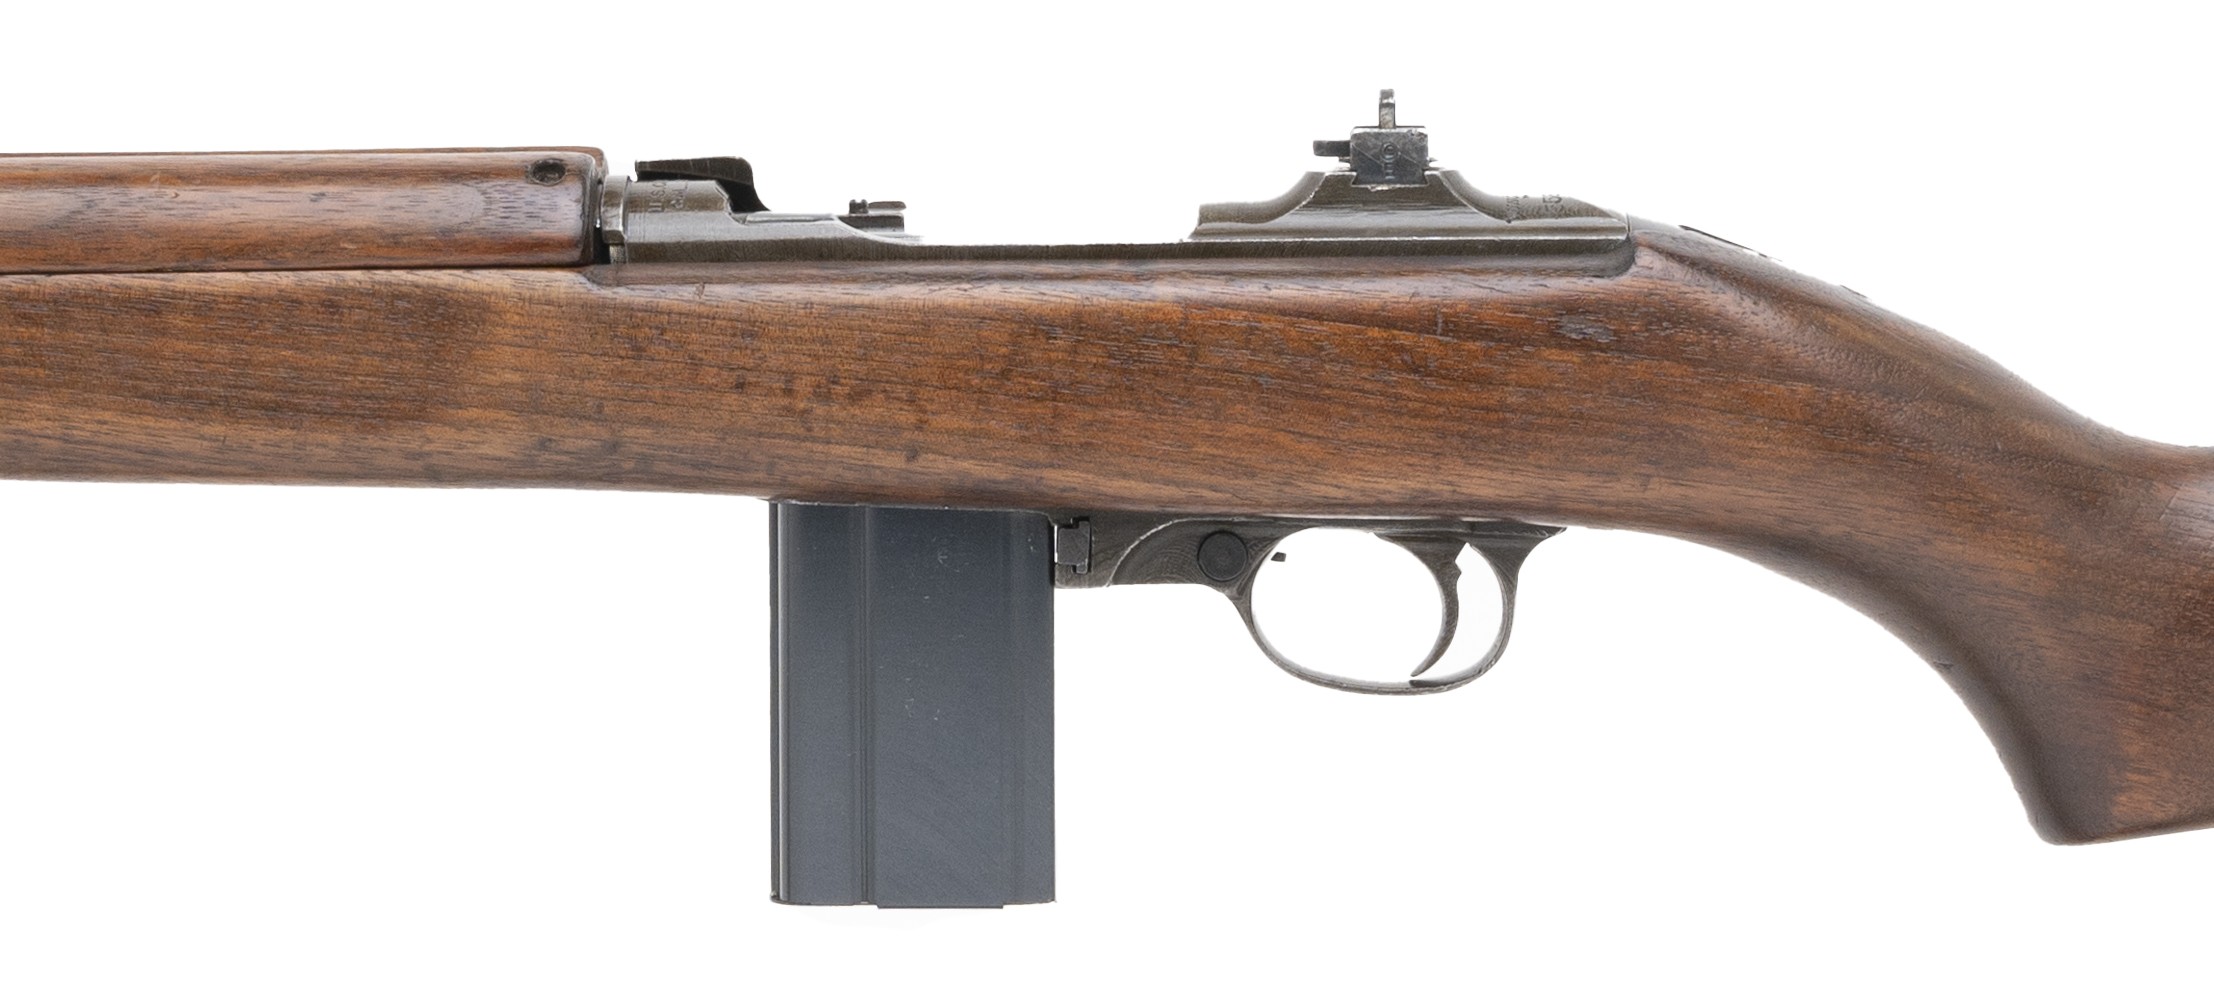 Winchester m1 carbine values